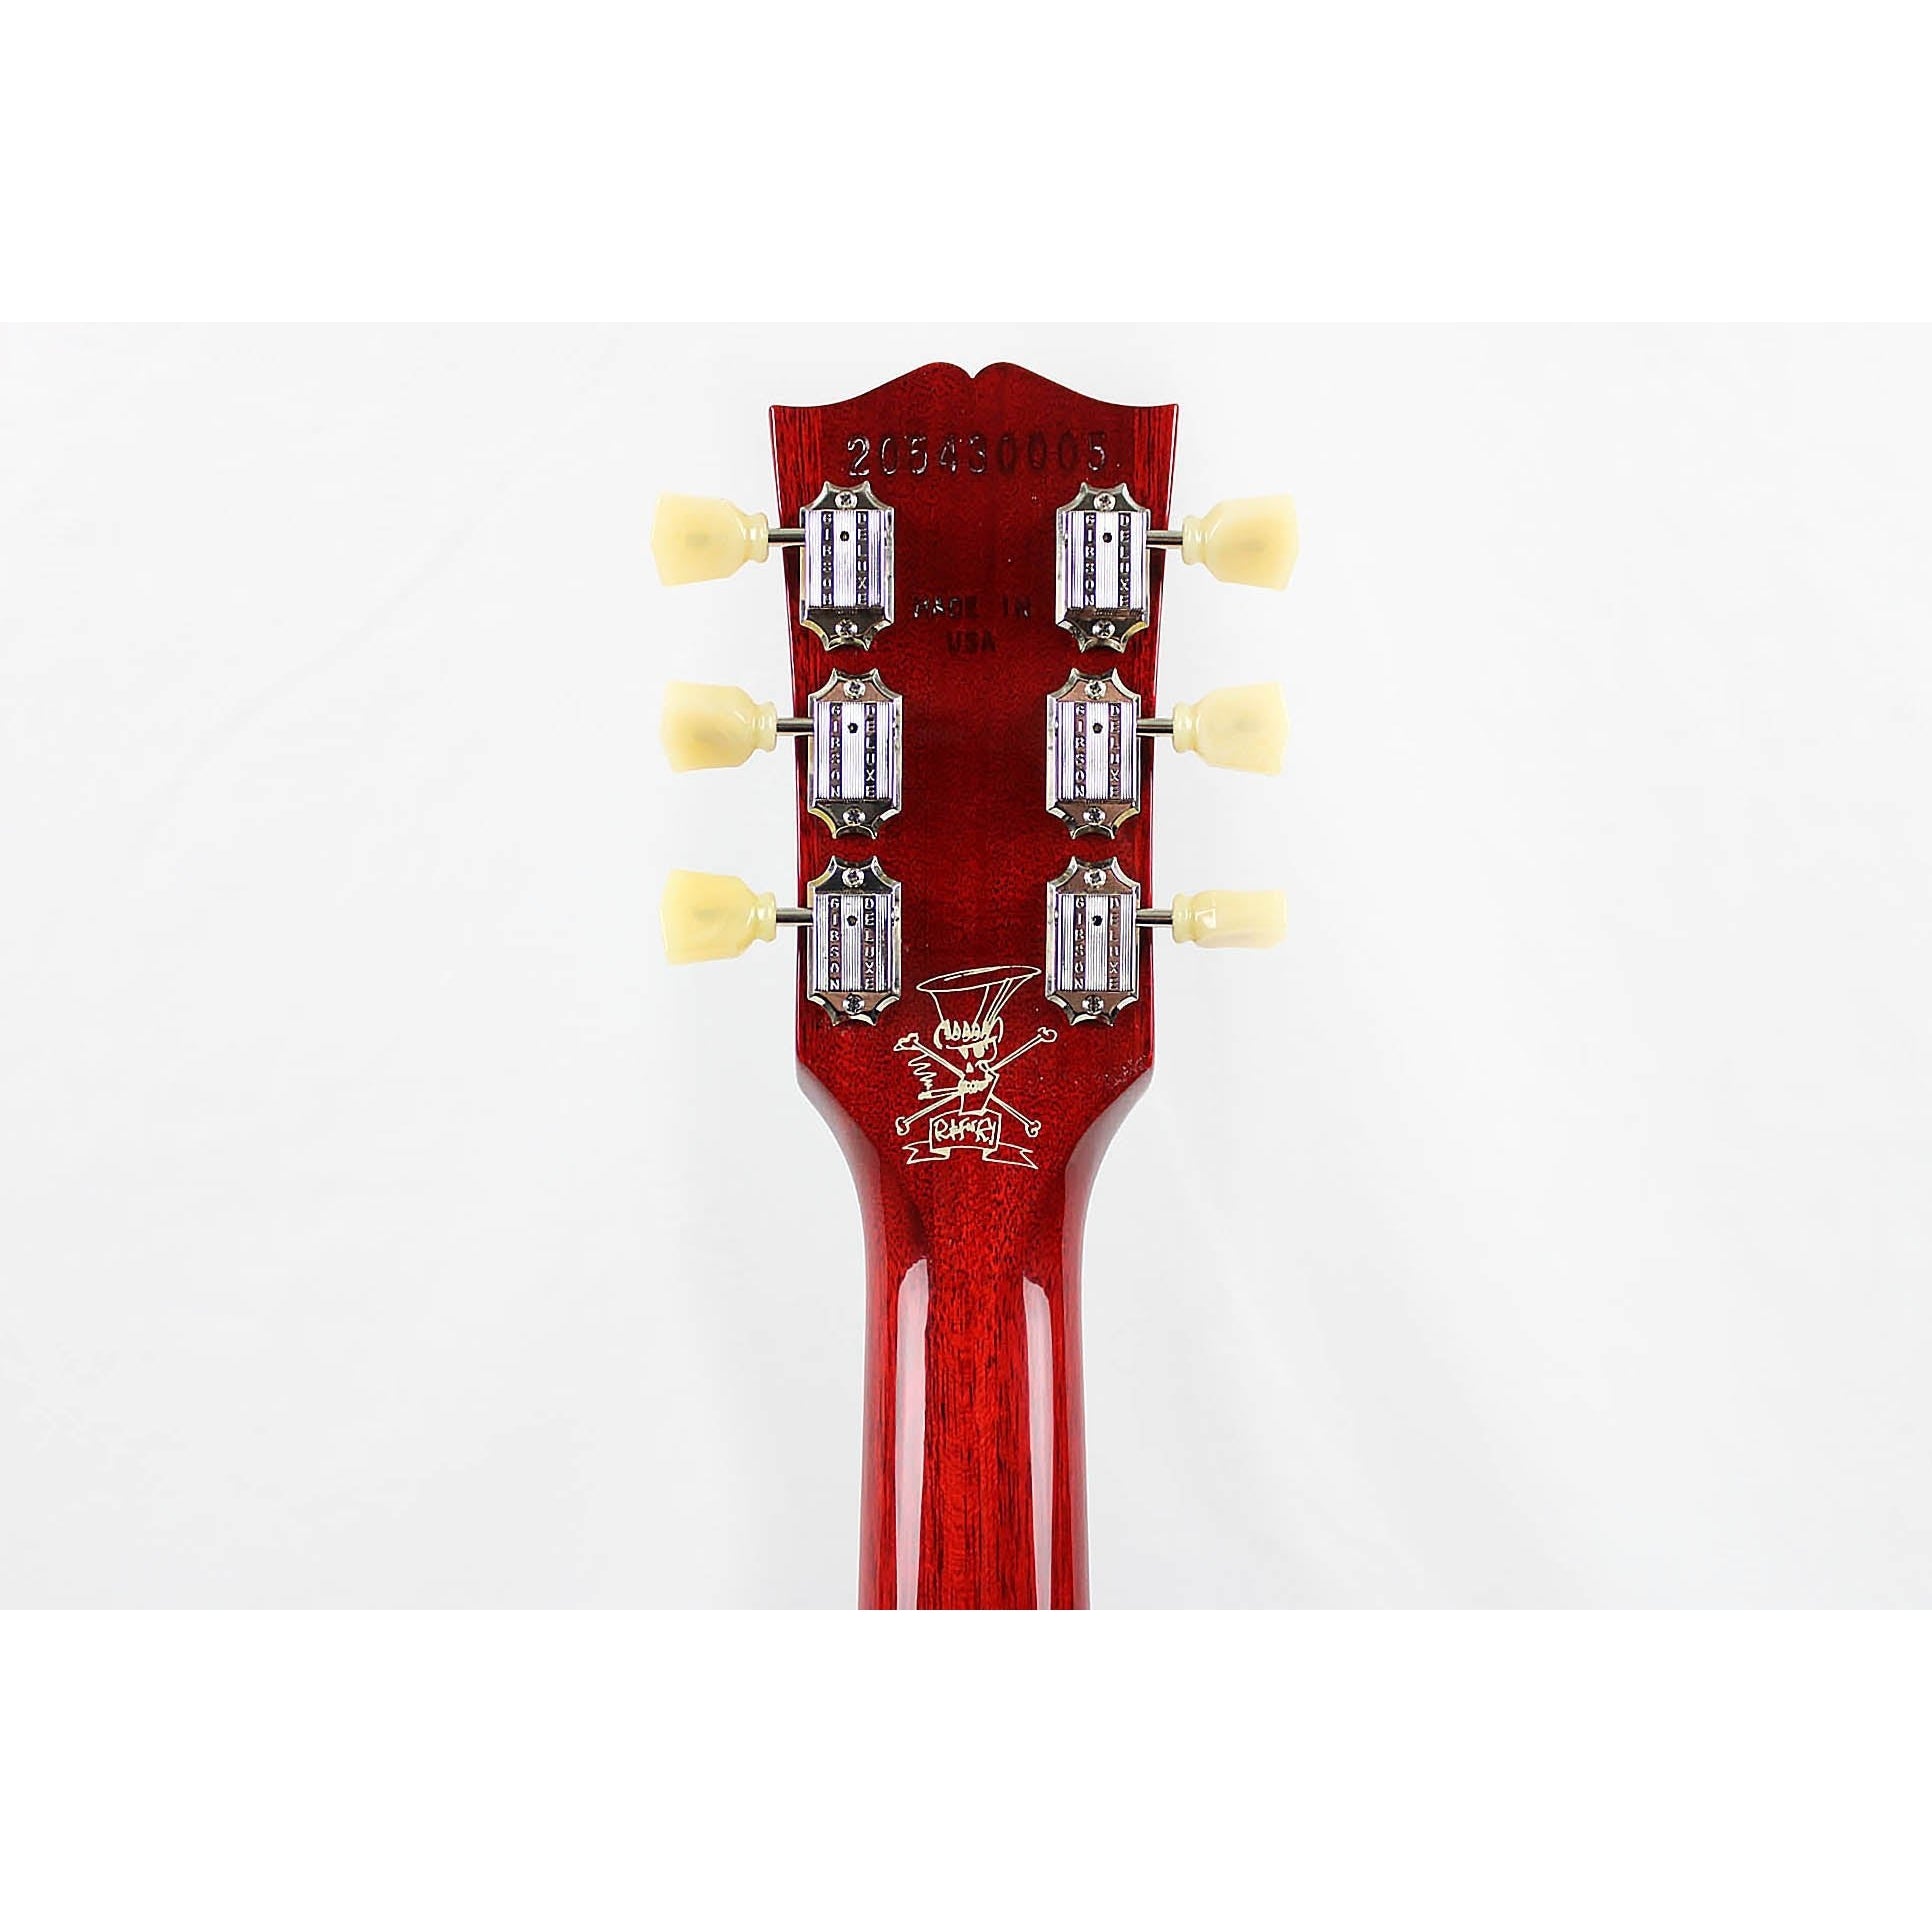 Gibson Slash Les Paul Standard - Appetite Amber - Leitz Music-711106036625-LPSS00APNH1